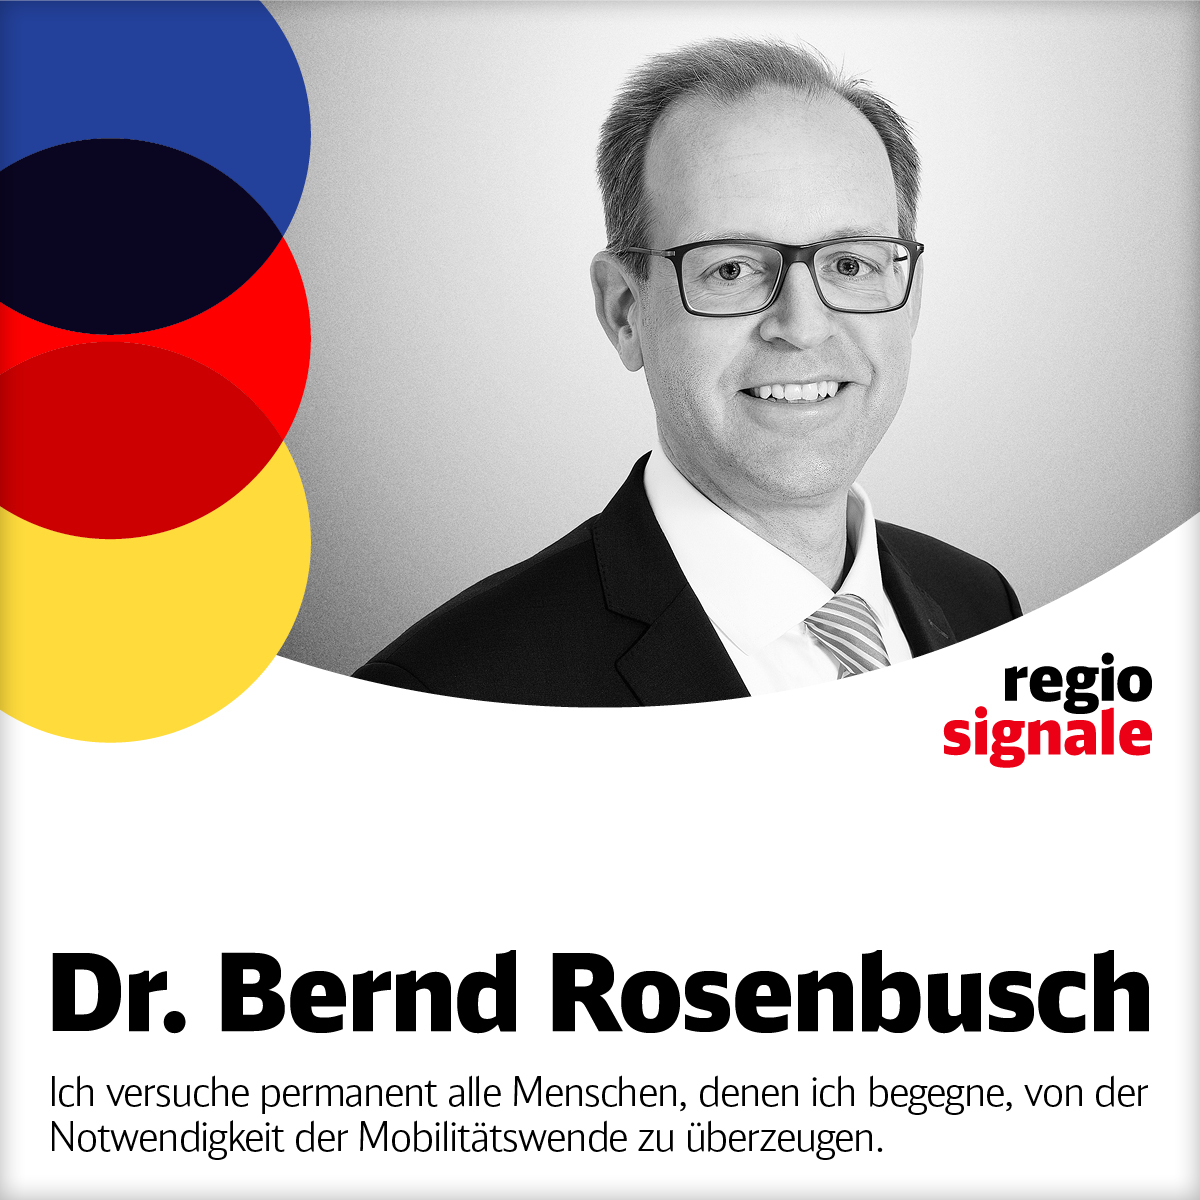 Dr. Bernd Rosenbusch